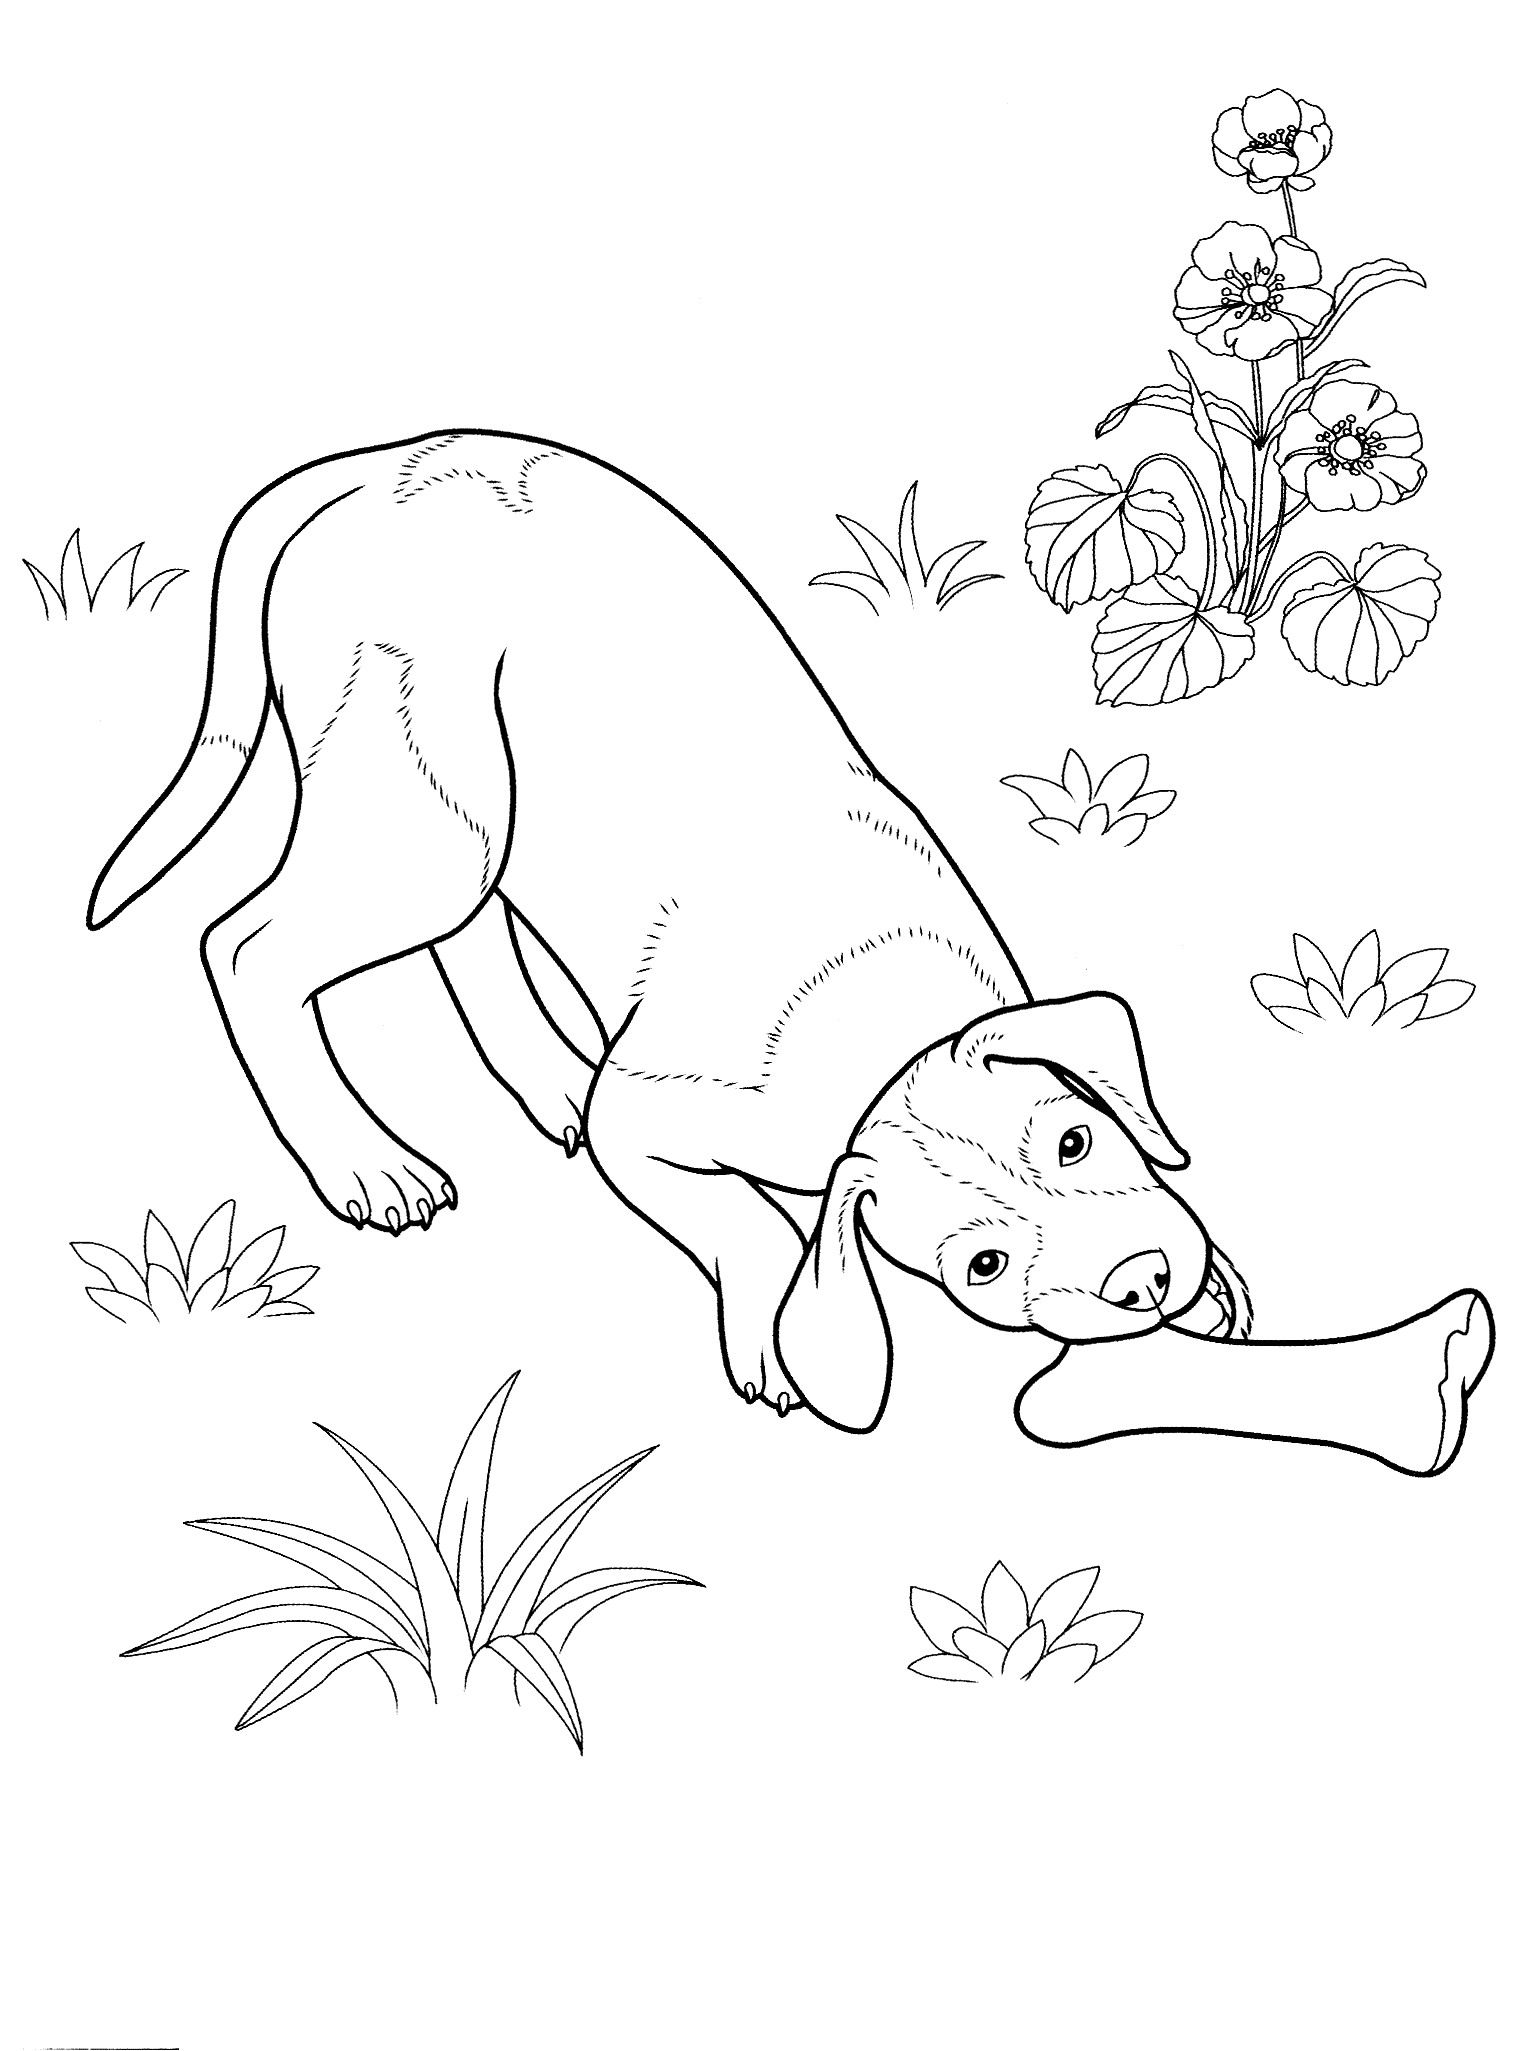 cane_da_colorare_10 disegni da colorare per adulti | Dog coloring page,  German shepherd colors, Owl coloring pages